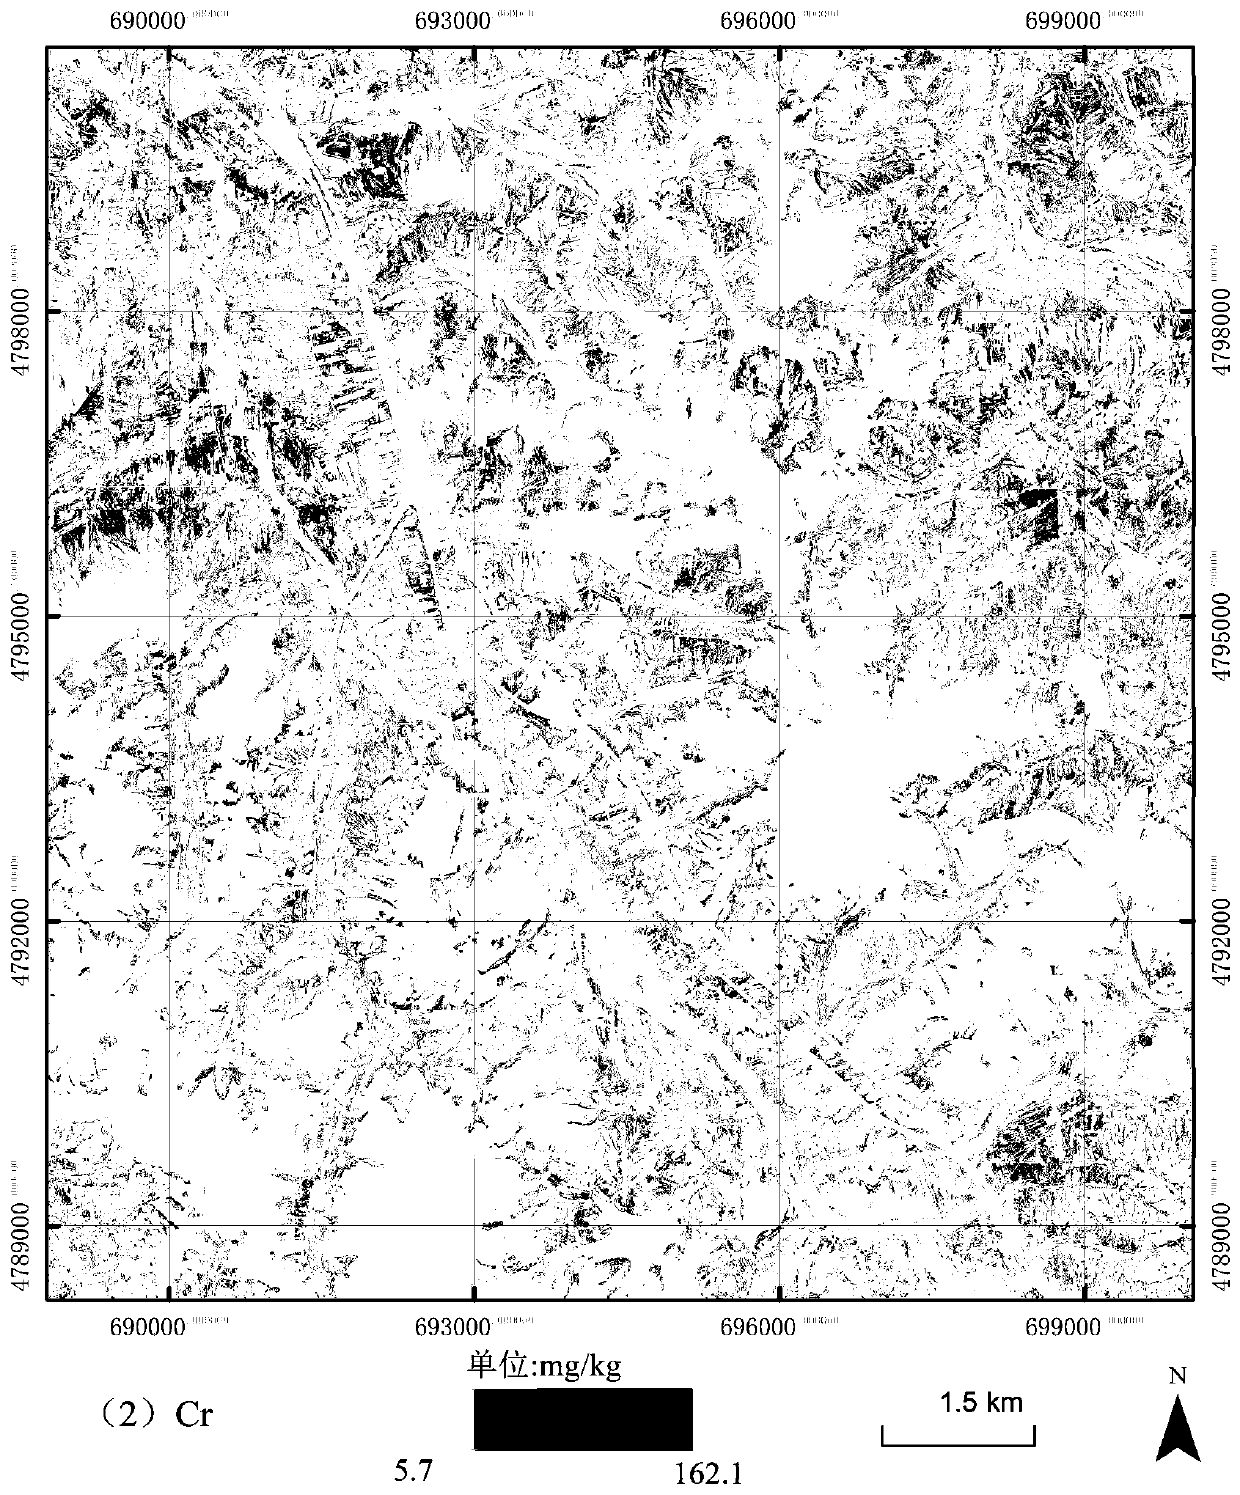 Hyperspectral image-based regional ecological risk assessment method